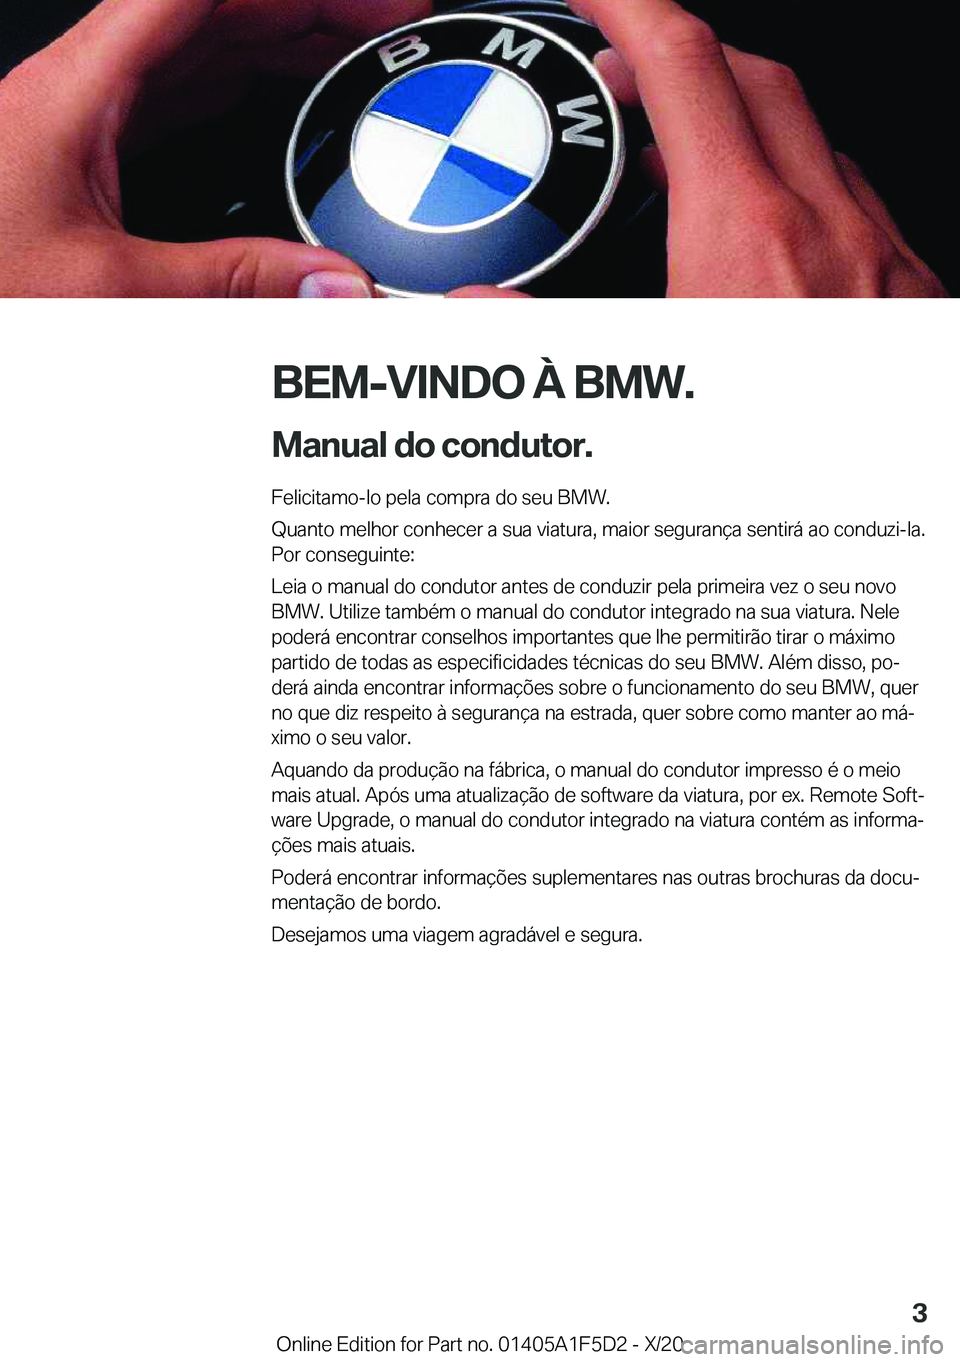 BMW X4 M 2021  Manual do condutor (in Portuguese) �B�E�M�-�V�I�N�D�O��À��B�M�W�.
�M�a�n�u�a�l��d�o��c�o�n�d�u�t�o�r�. �F�e�l�i�c�i�t�a�m�o�-�l�o��p�e�l�a��c�o�m�p�r�a��d�o��s�e�u��B�M�W�.
�Q�u�a�n�t�o��m�e�l�h�o�r��c�o�n�h�e�c�e�r��a��s